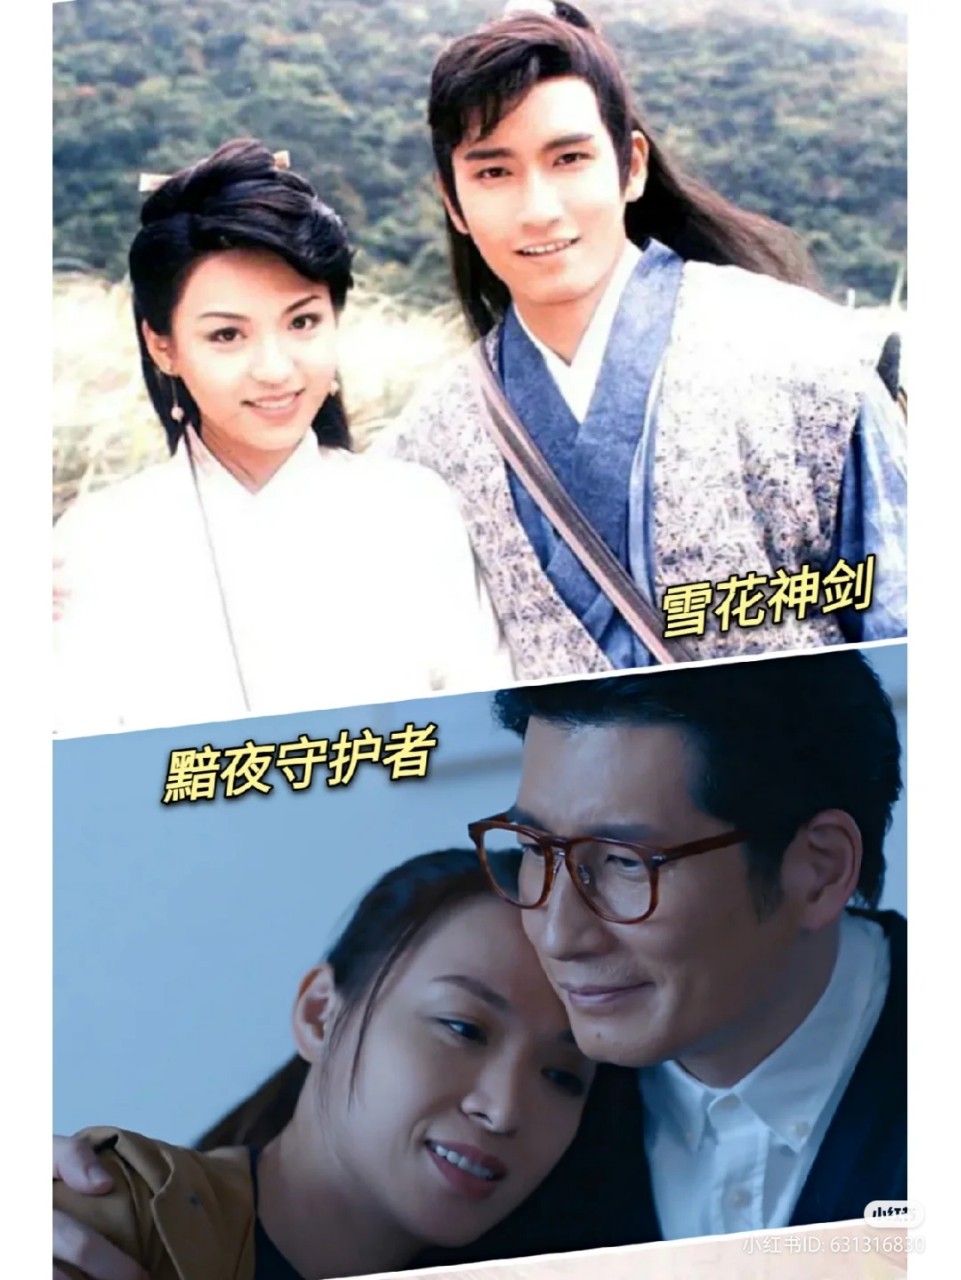 陈炜和袁文杰近日被疯传一张在1997年亚视剧集《雪山神剑》的同框照片。